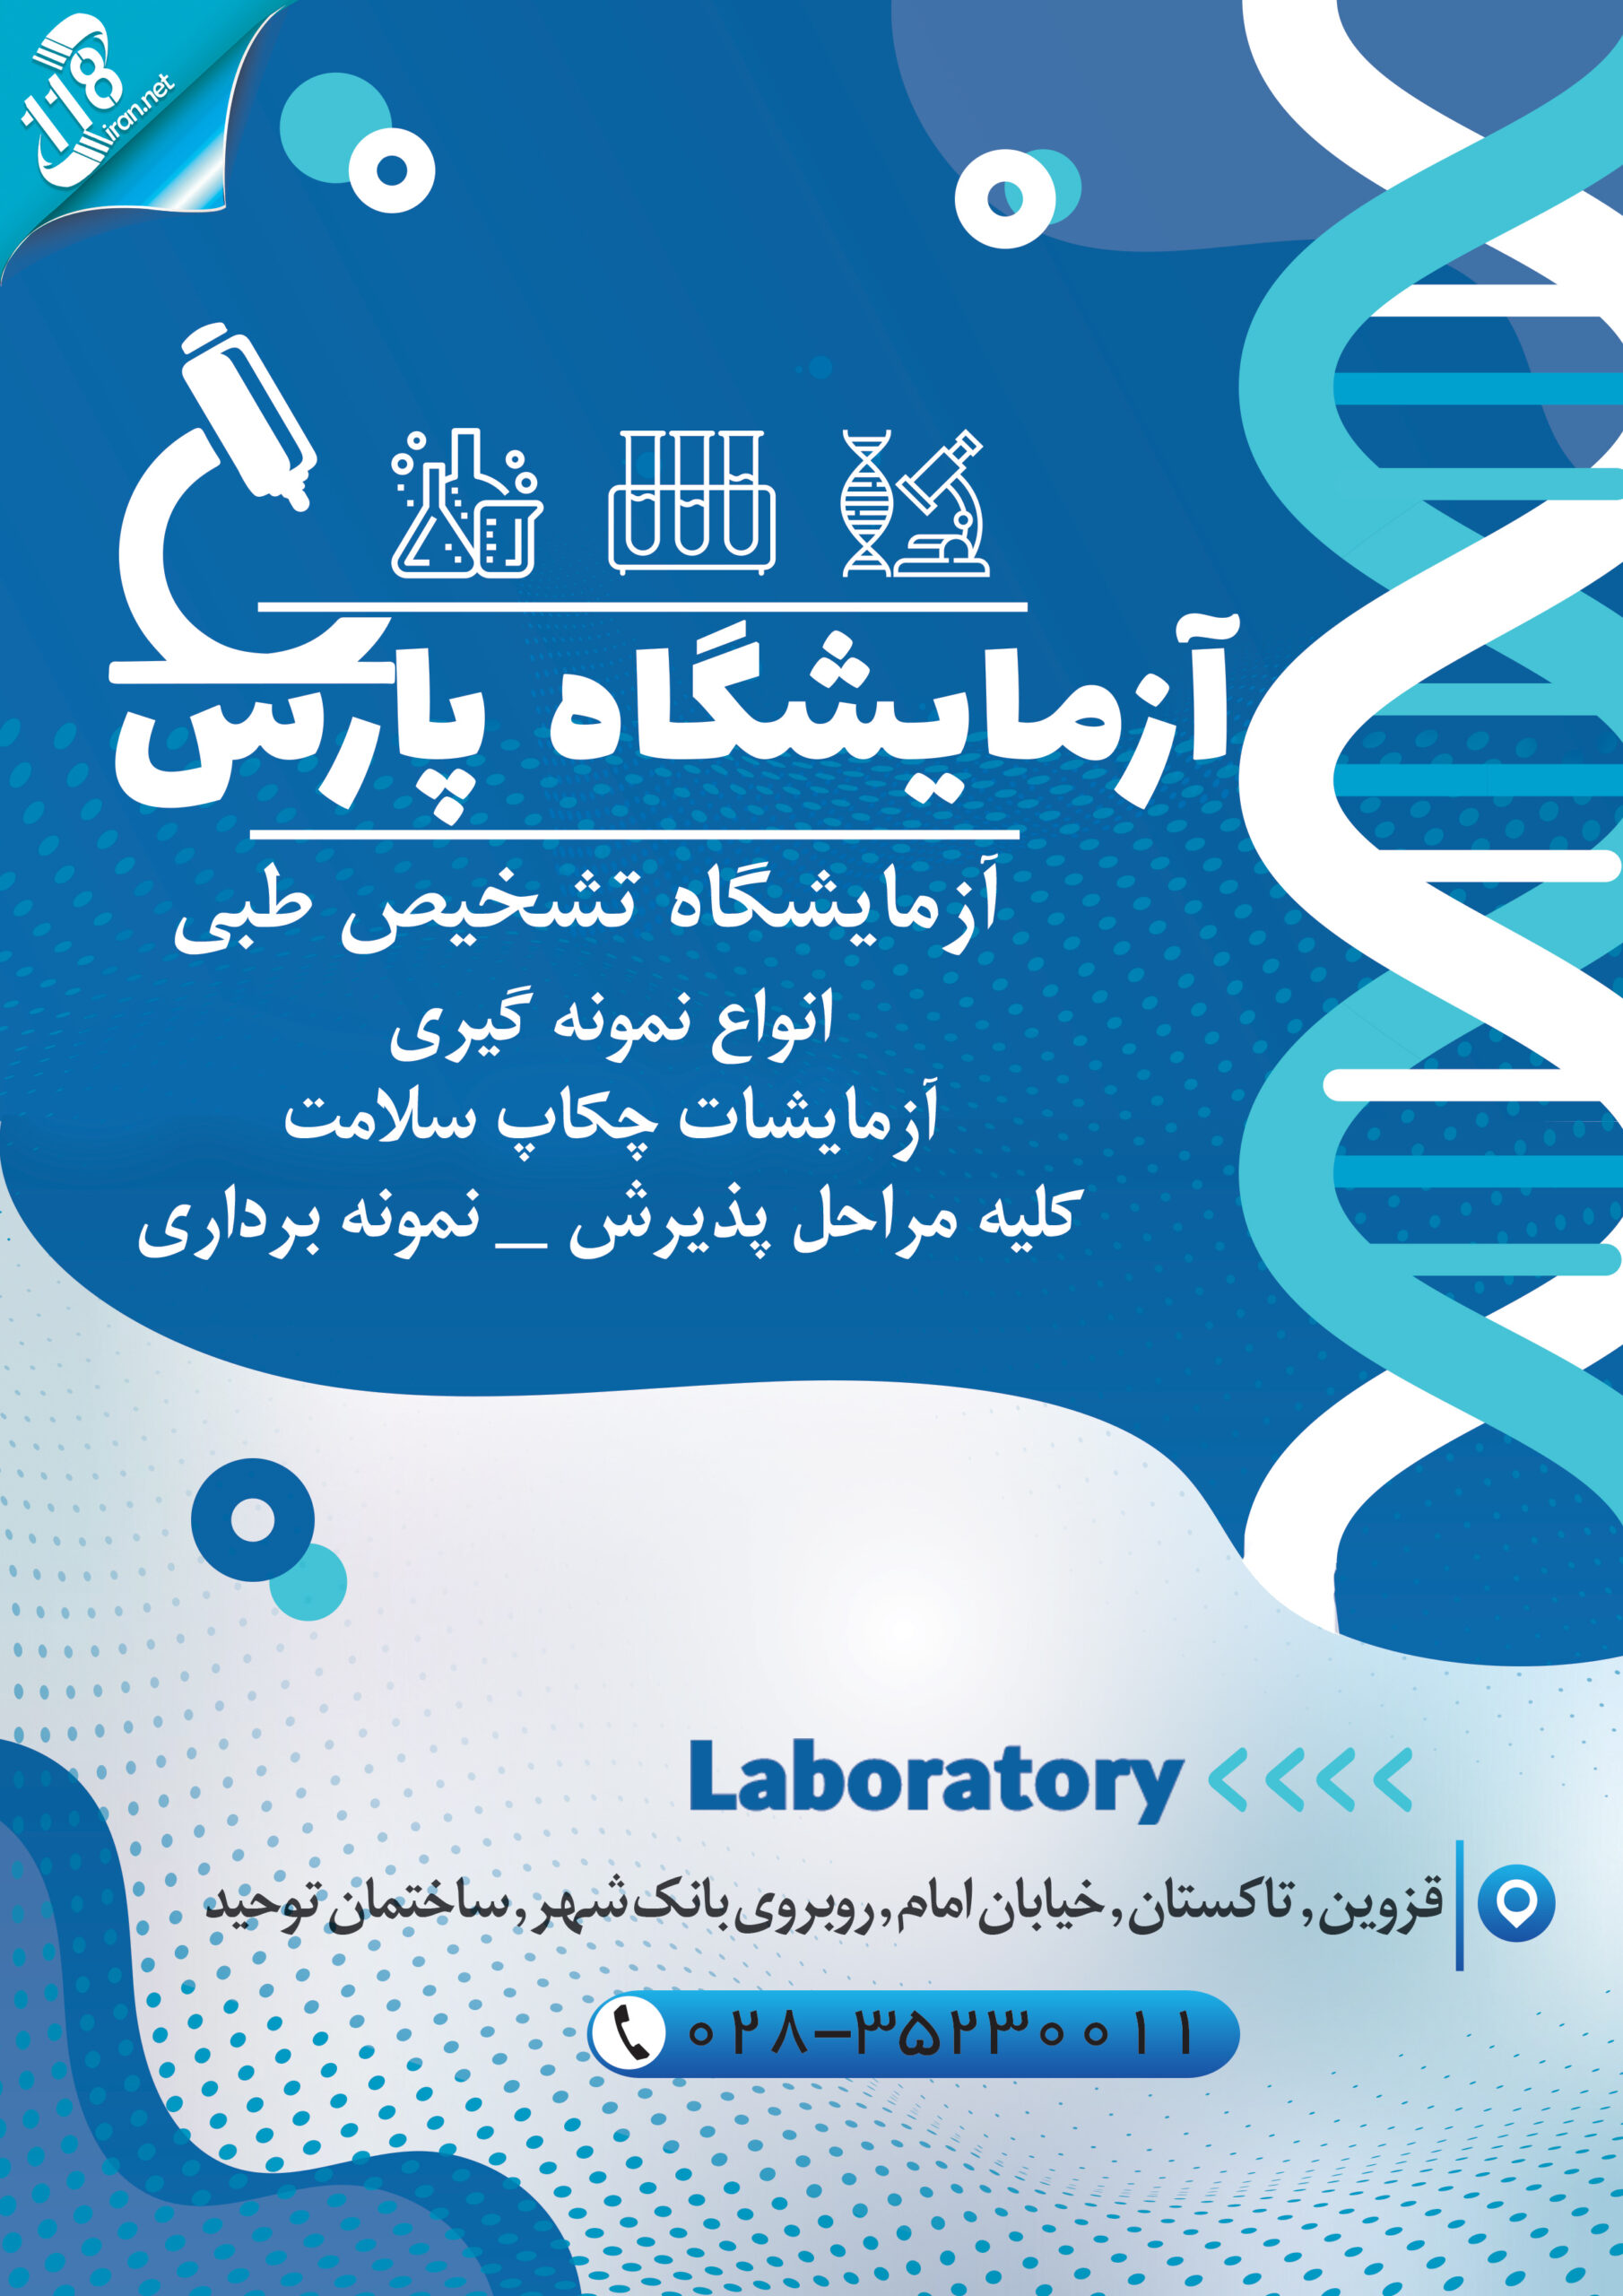  آزمایشگاه پارس در تاکستان 